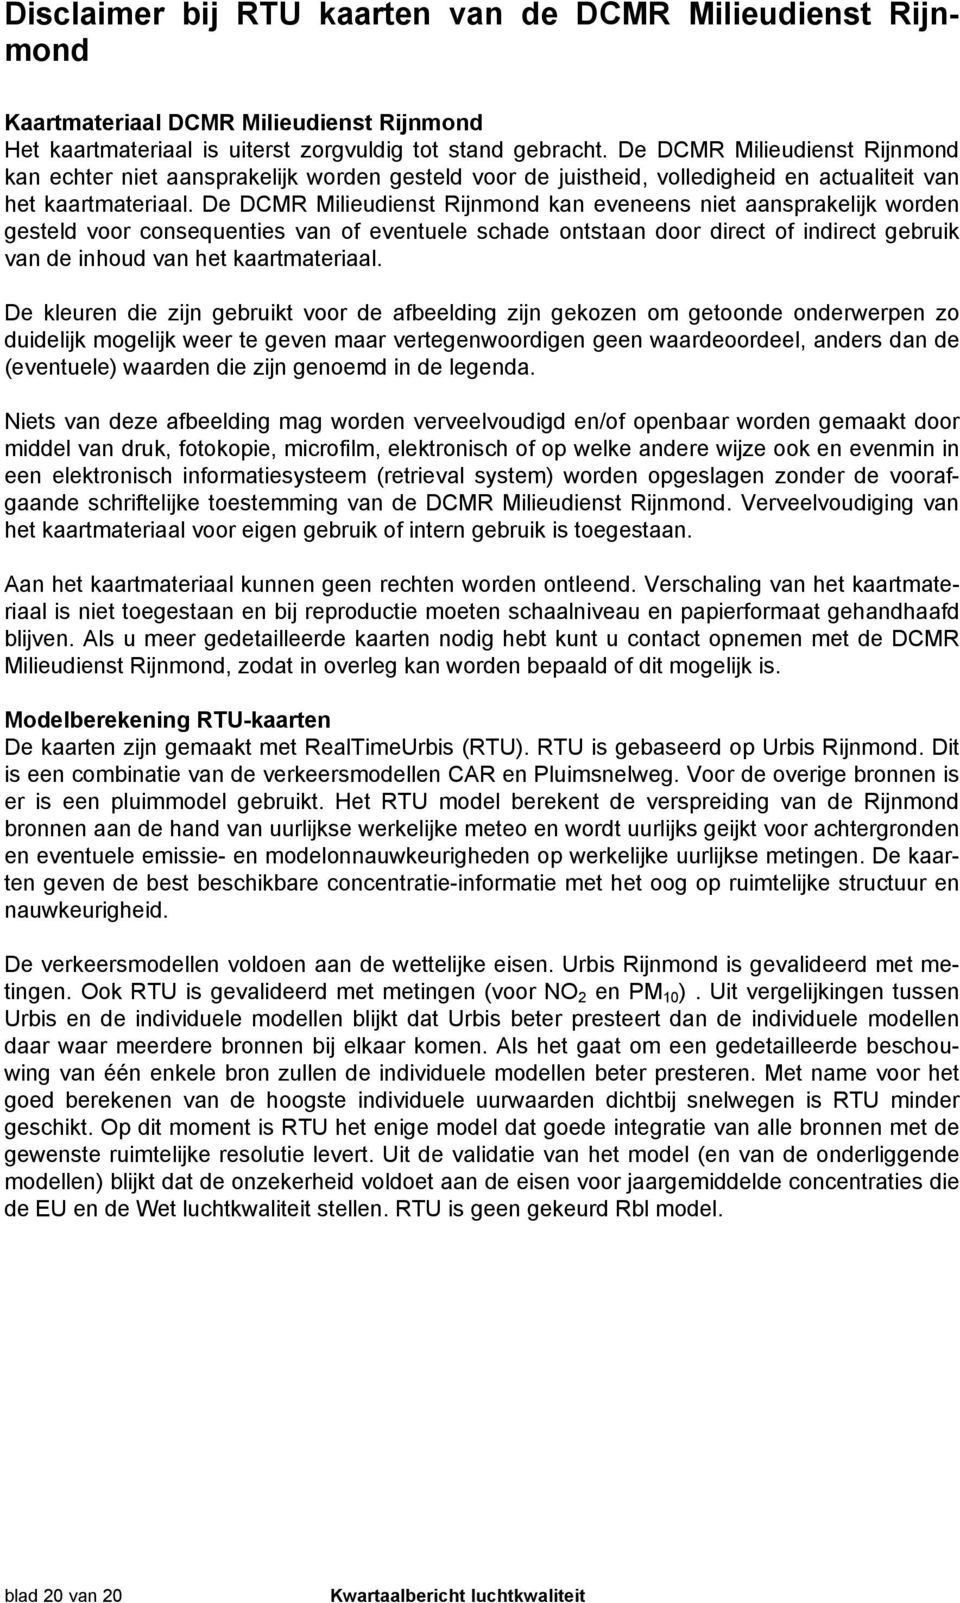 De DCMR Milieudienst Rijnmond kan eveneens niet aansprakelijk worden gesteld voor consequenties van of eventuele schade ontstaan door direct of indirect gebruik van de inhoud van het kaartmateriaal.